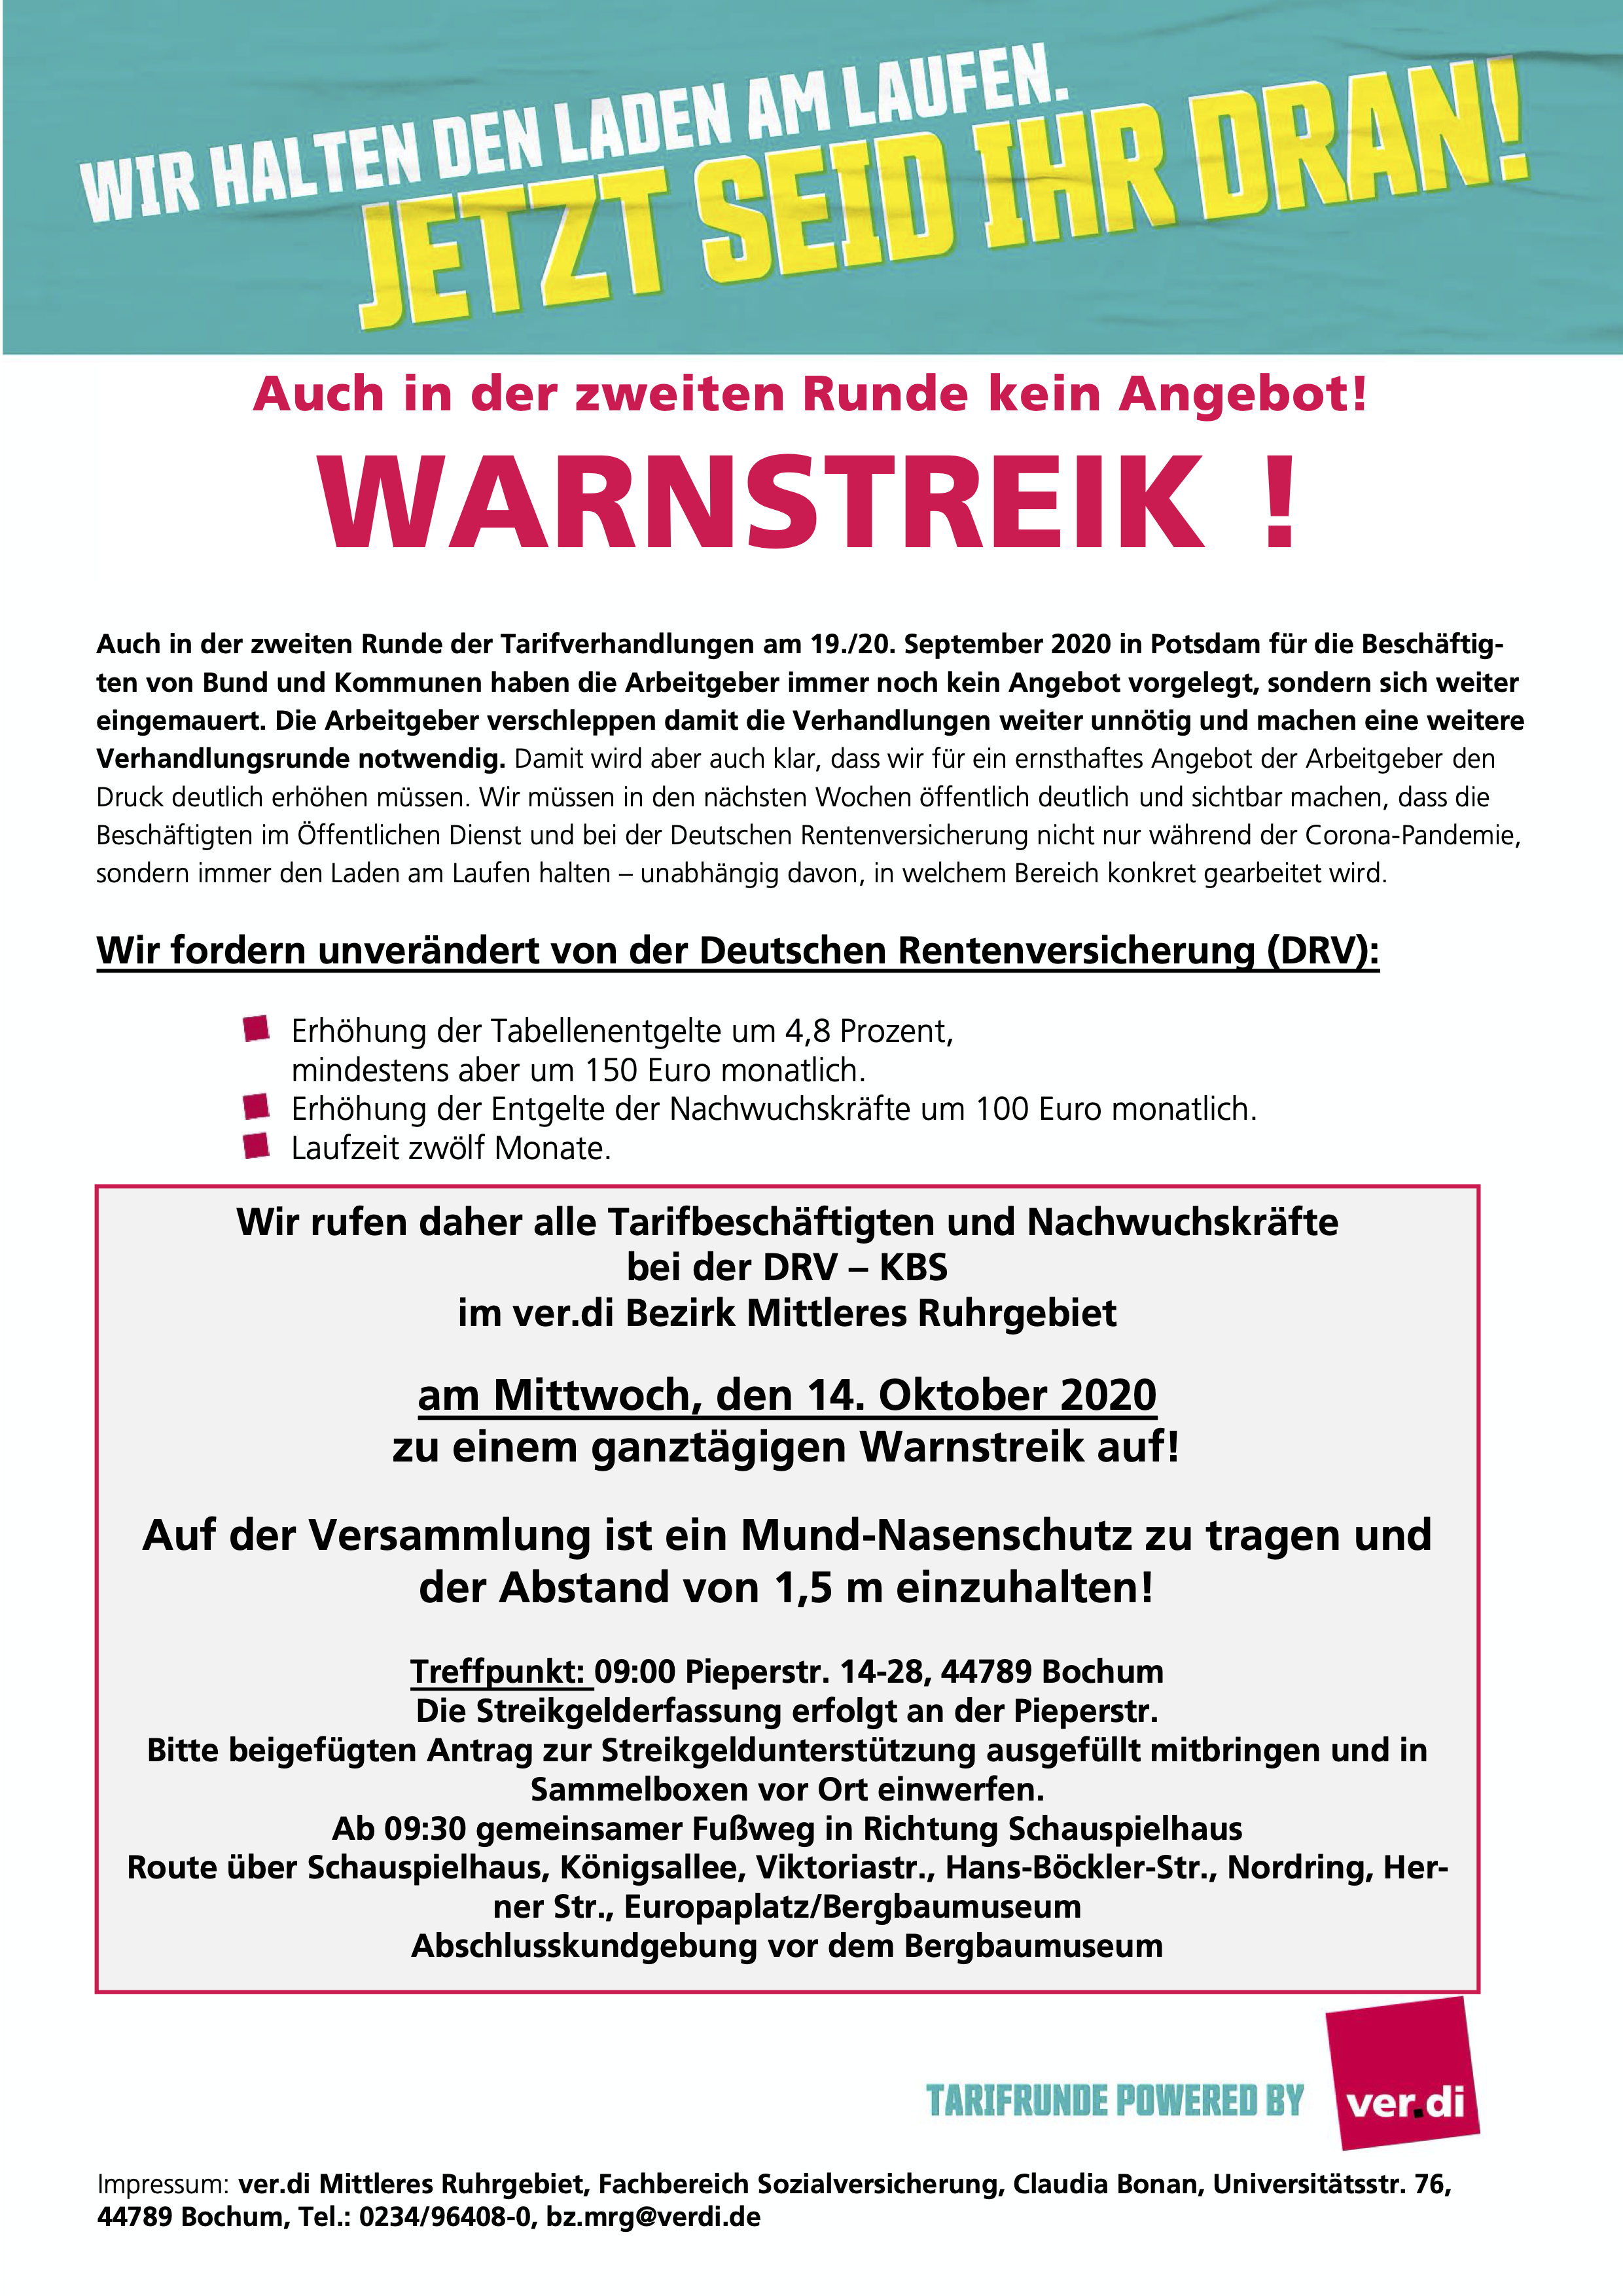 Aufruf von ver.di: Warnstreik bei der Deutschen Rentenversicherung Knappschaft-Bahn-See am 14.10.2020